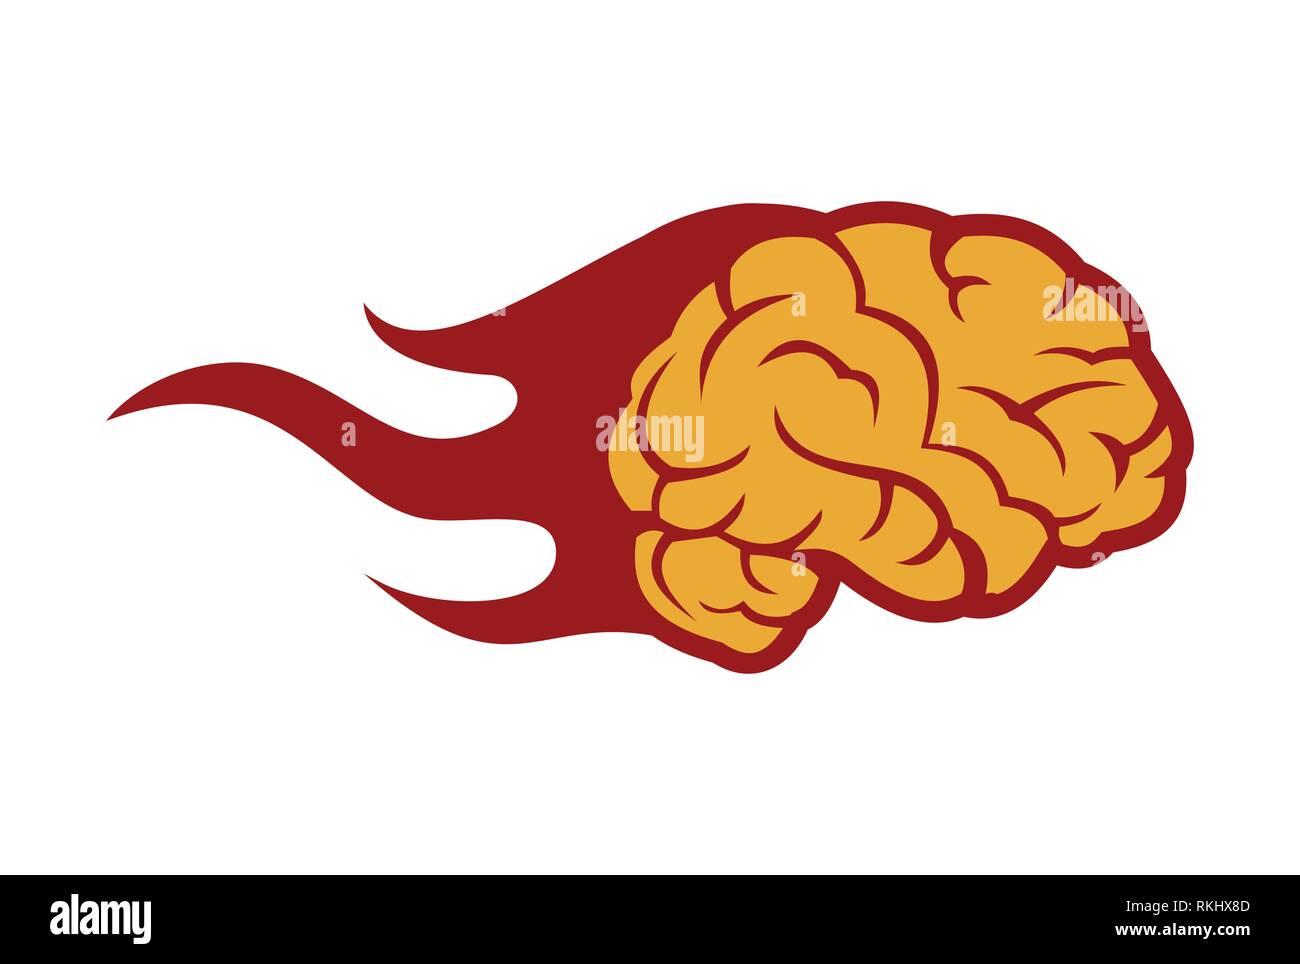 brain fire icon abstract logo Stock Vector